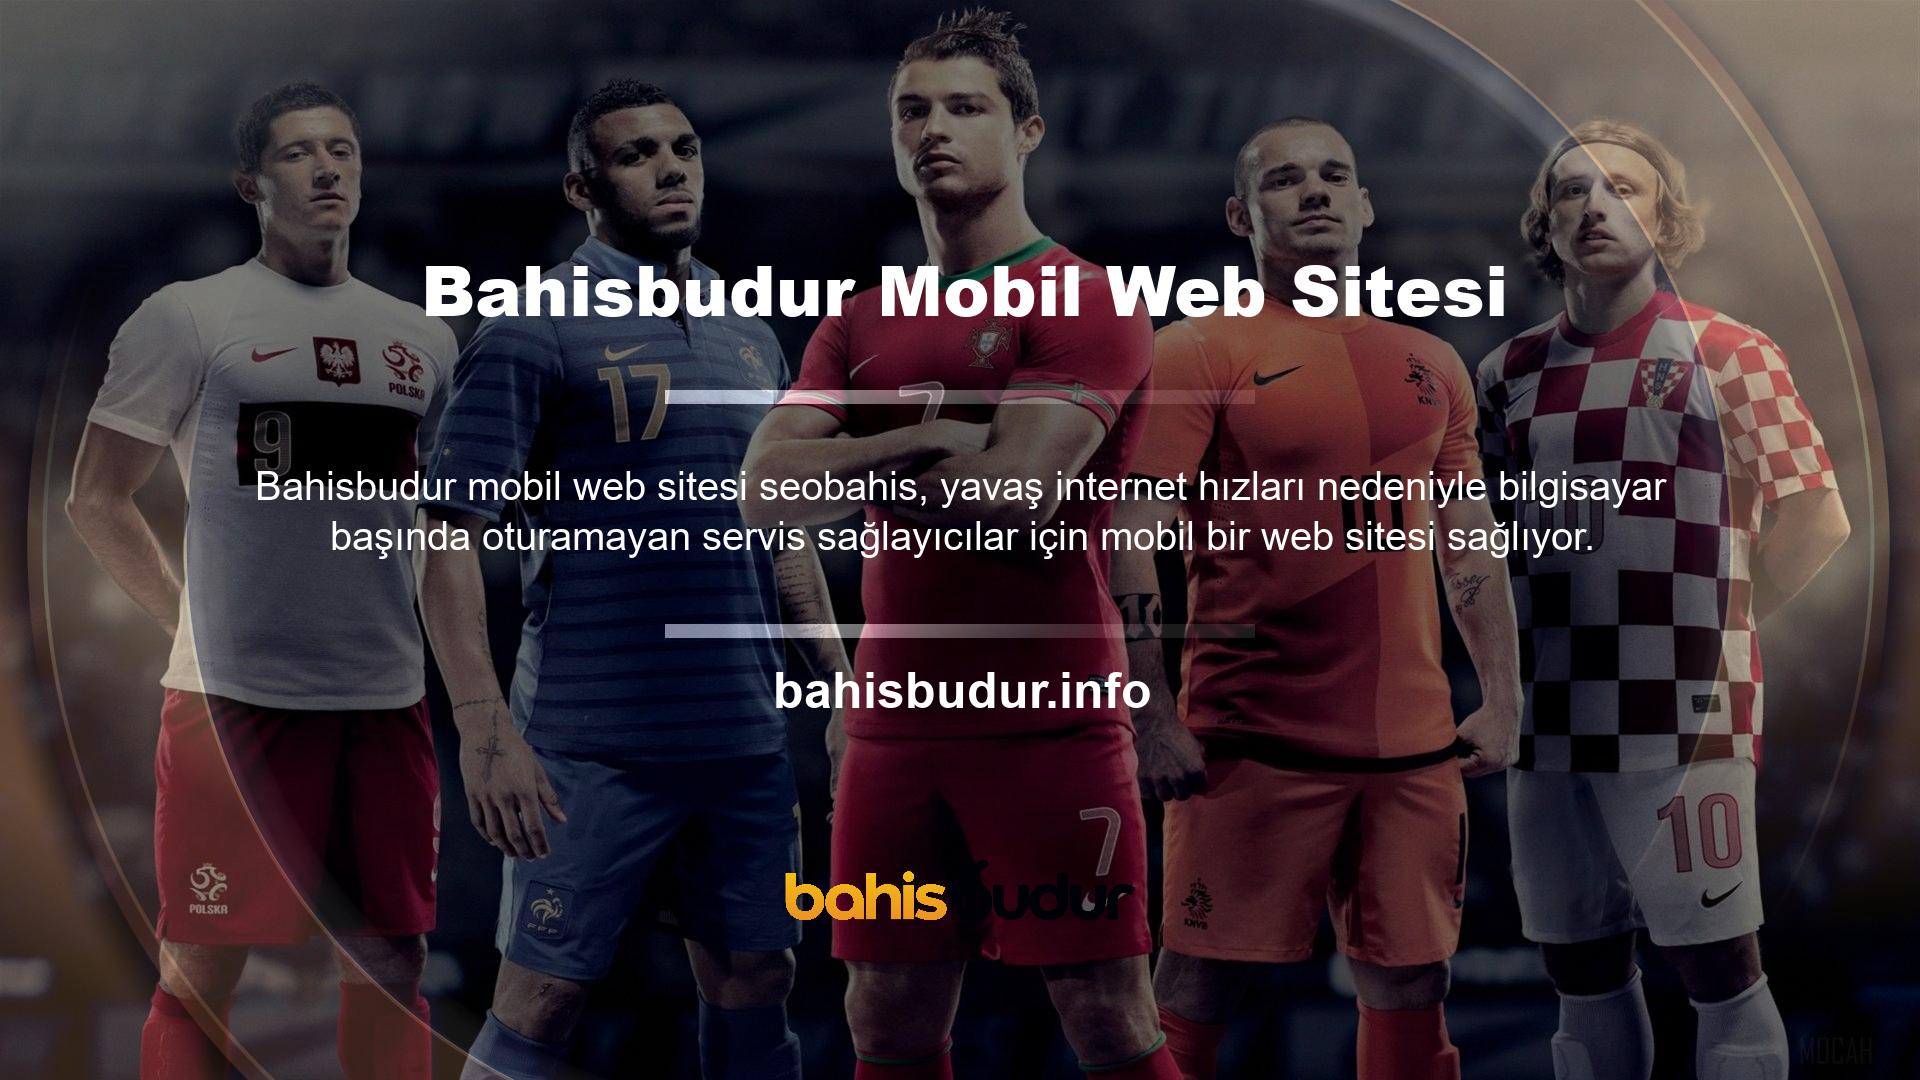 Bahisbudur, hızlı ve güvenilir, kazanç sağlayan bir mobil web sitesidir